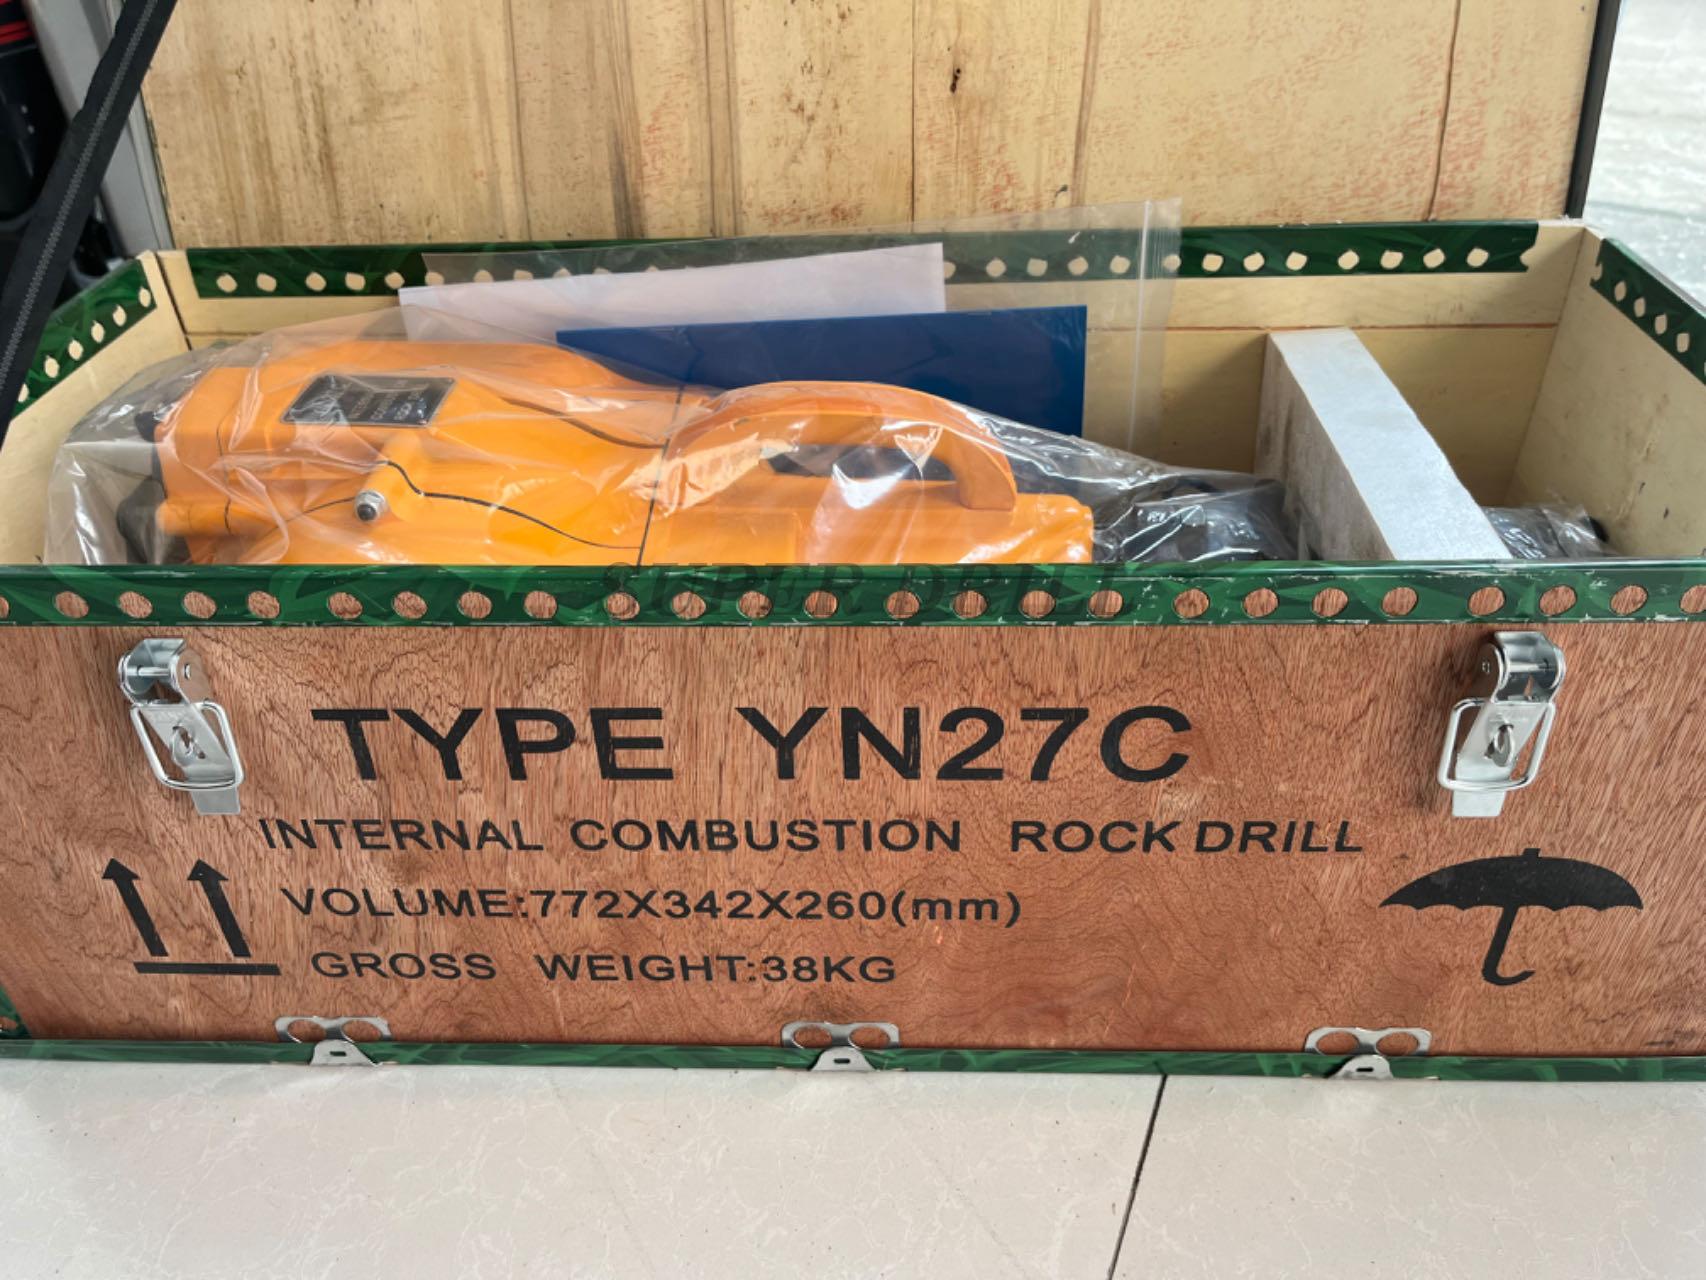 YN27C rock drills.